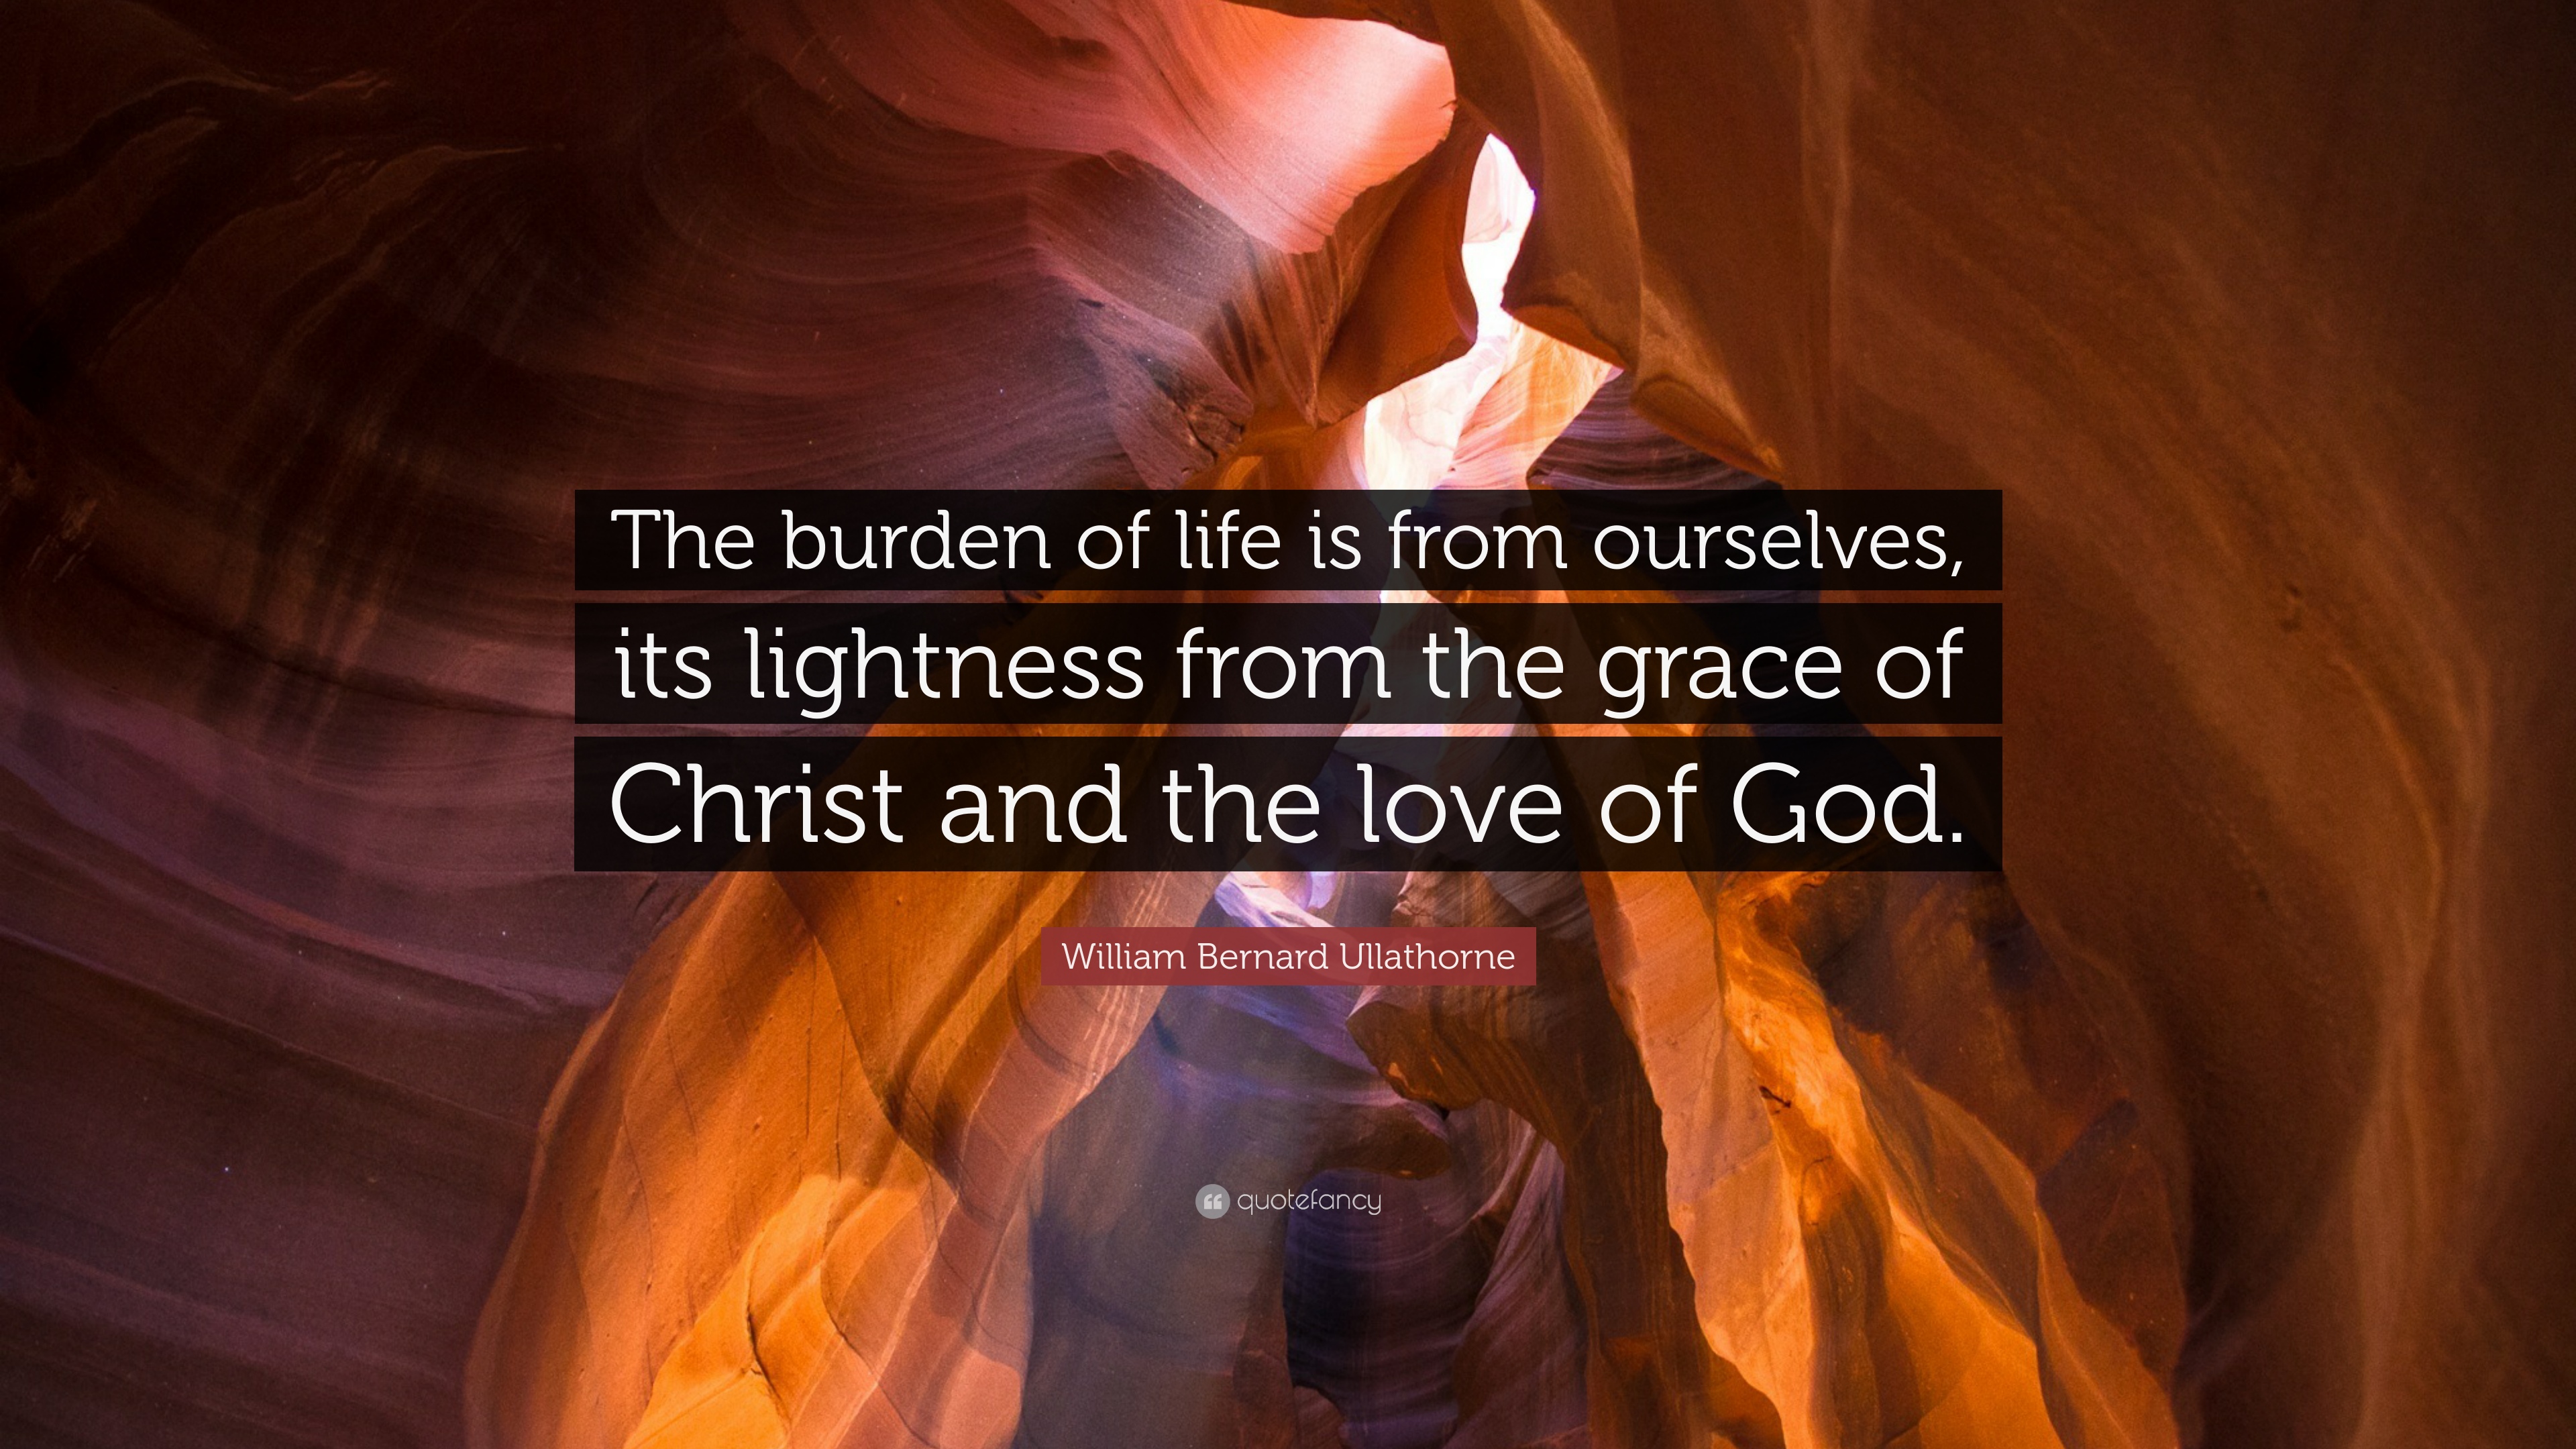 William Bernard Ullathorne Quote: “The burden of life is from ...